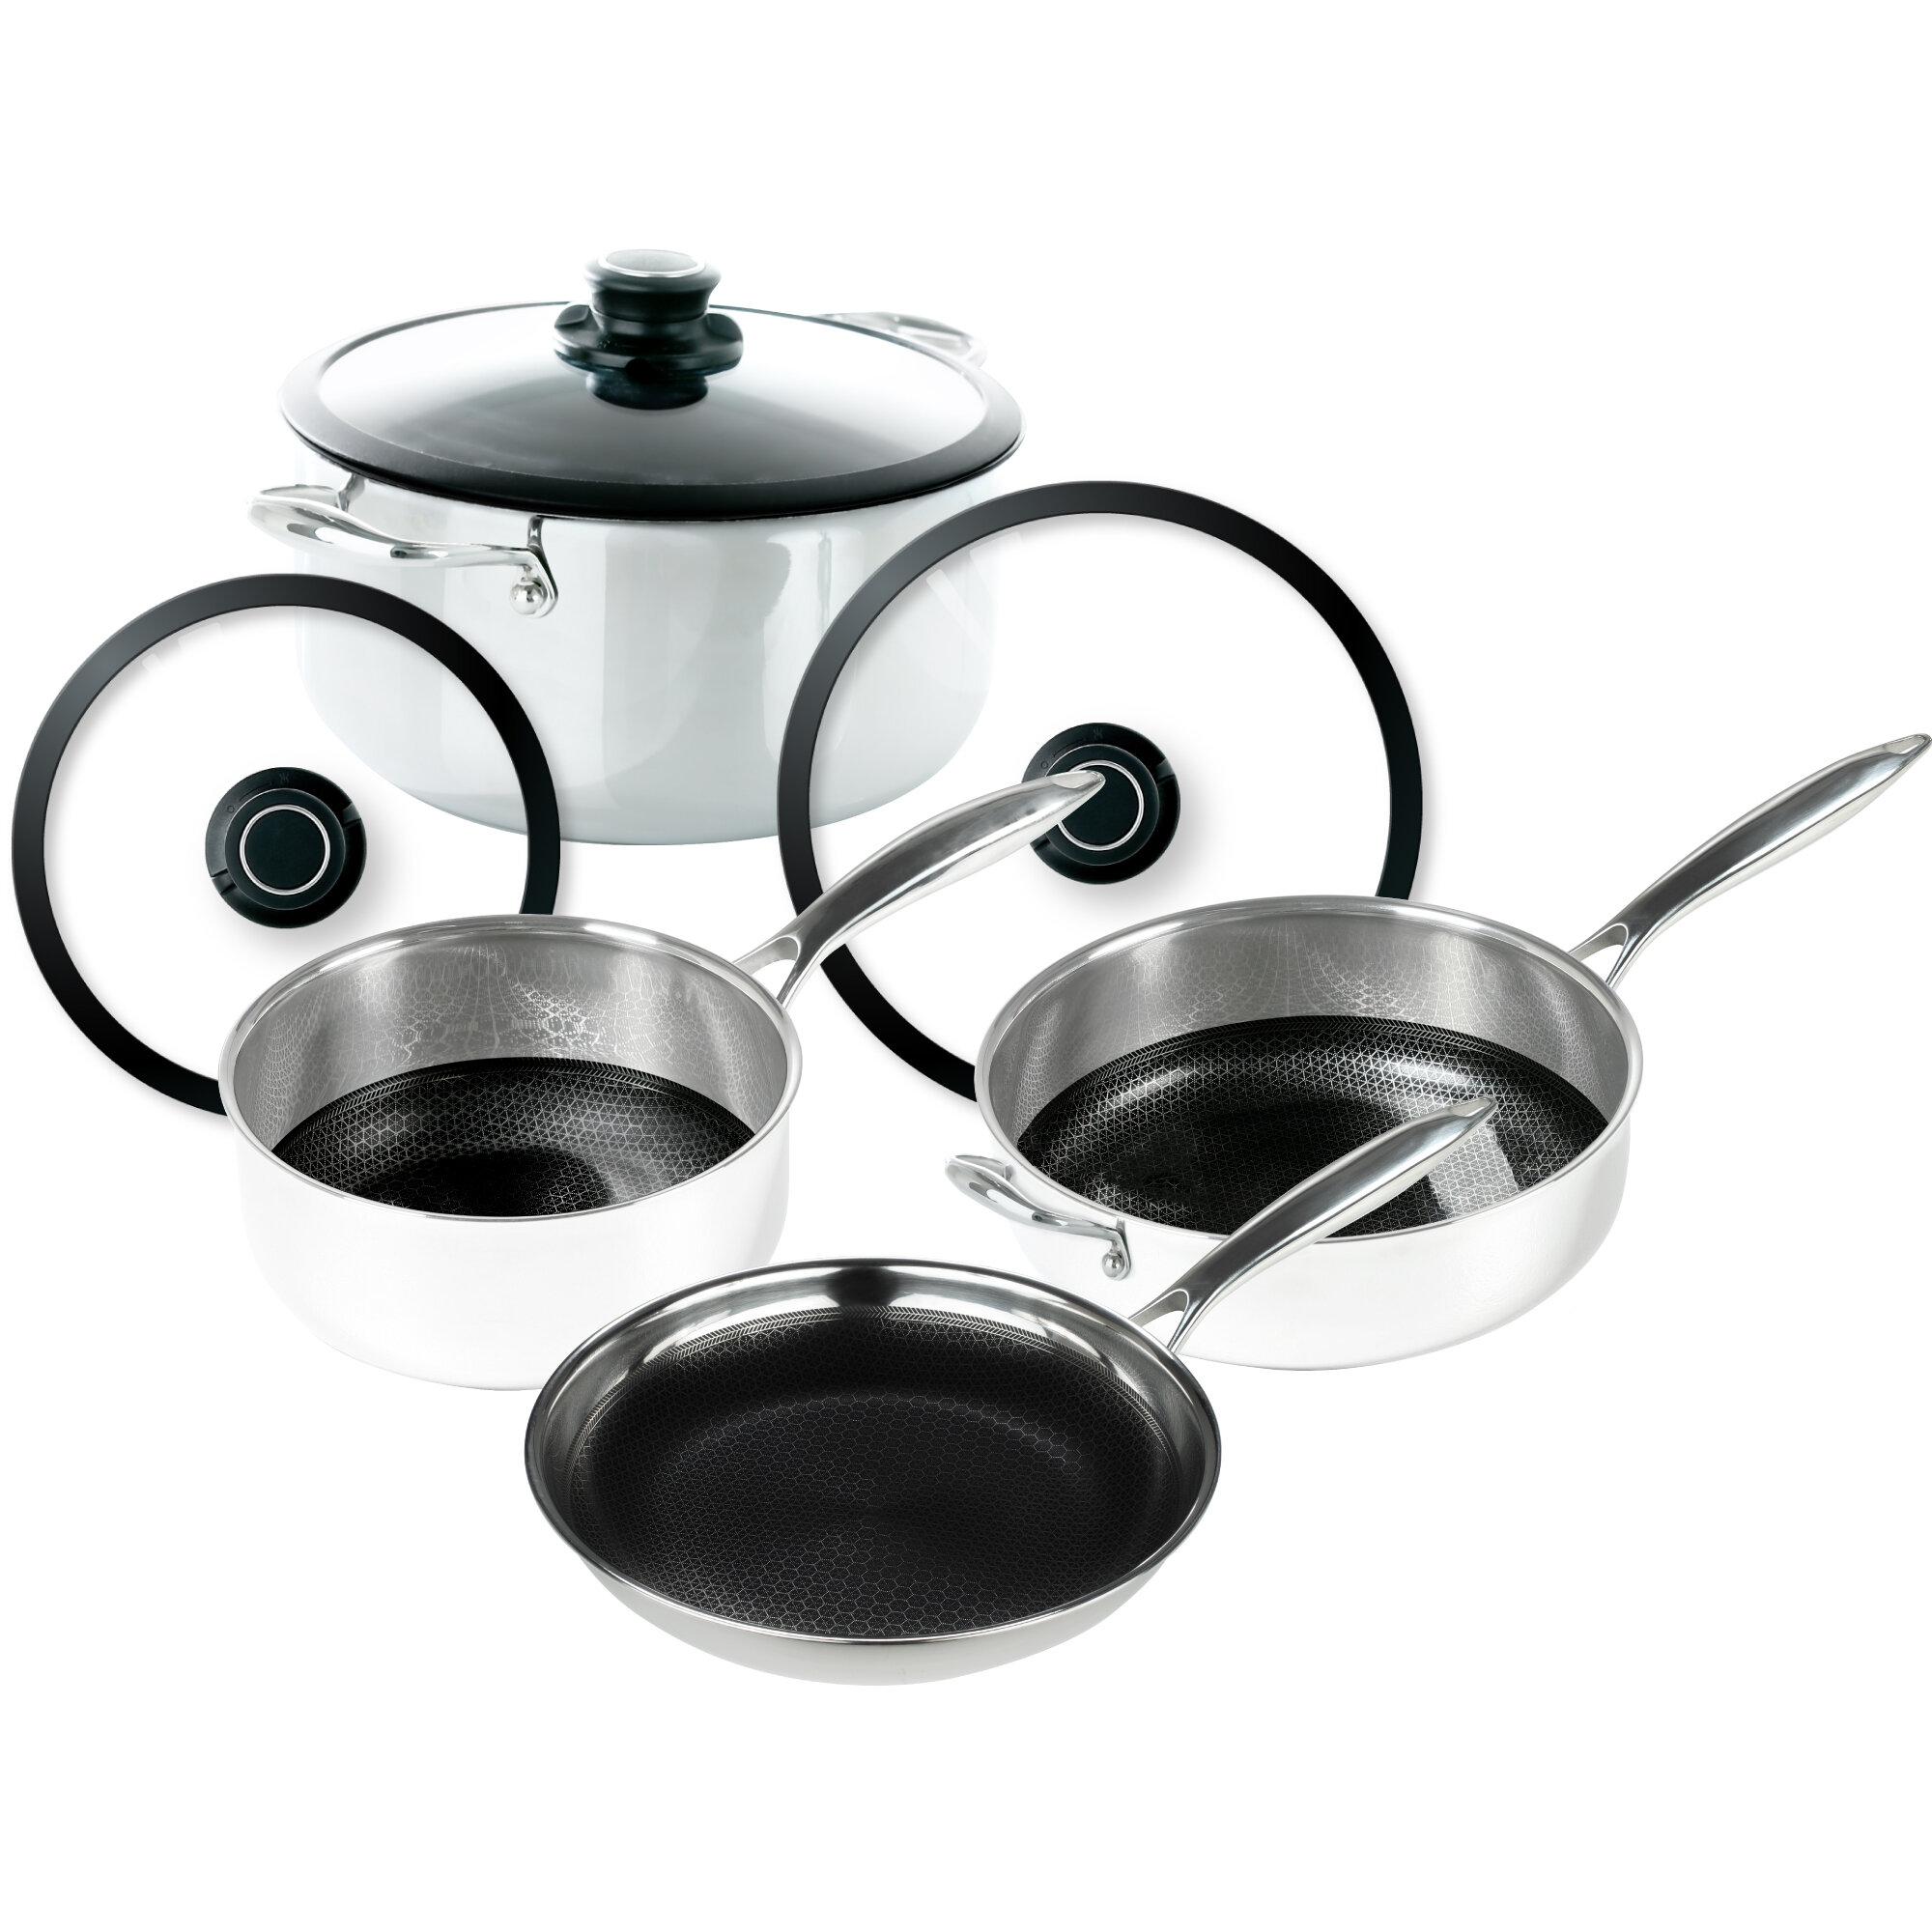 https://assets.wfcdn.com/im/44036543/compr-r85/9113/91137695/7-piece-stainless-steel-cookware-set.jpg